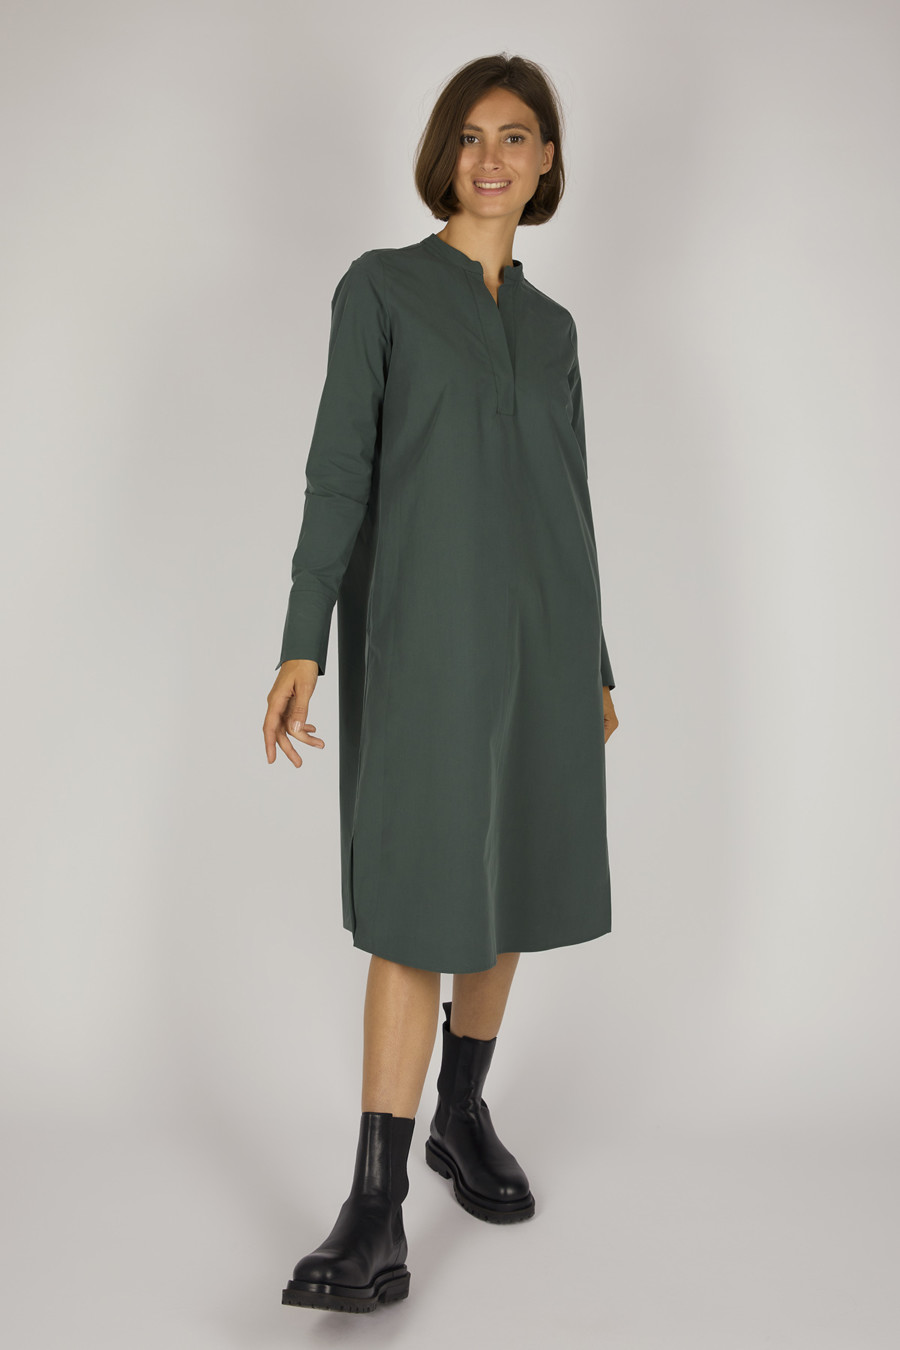 ETTA – Calf-length cotton dress – Color: Sky